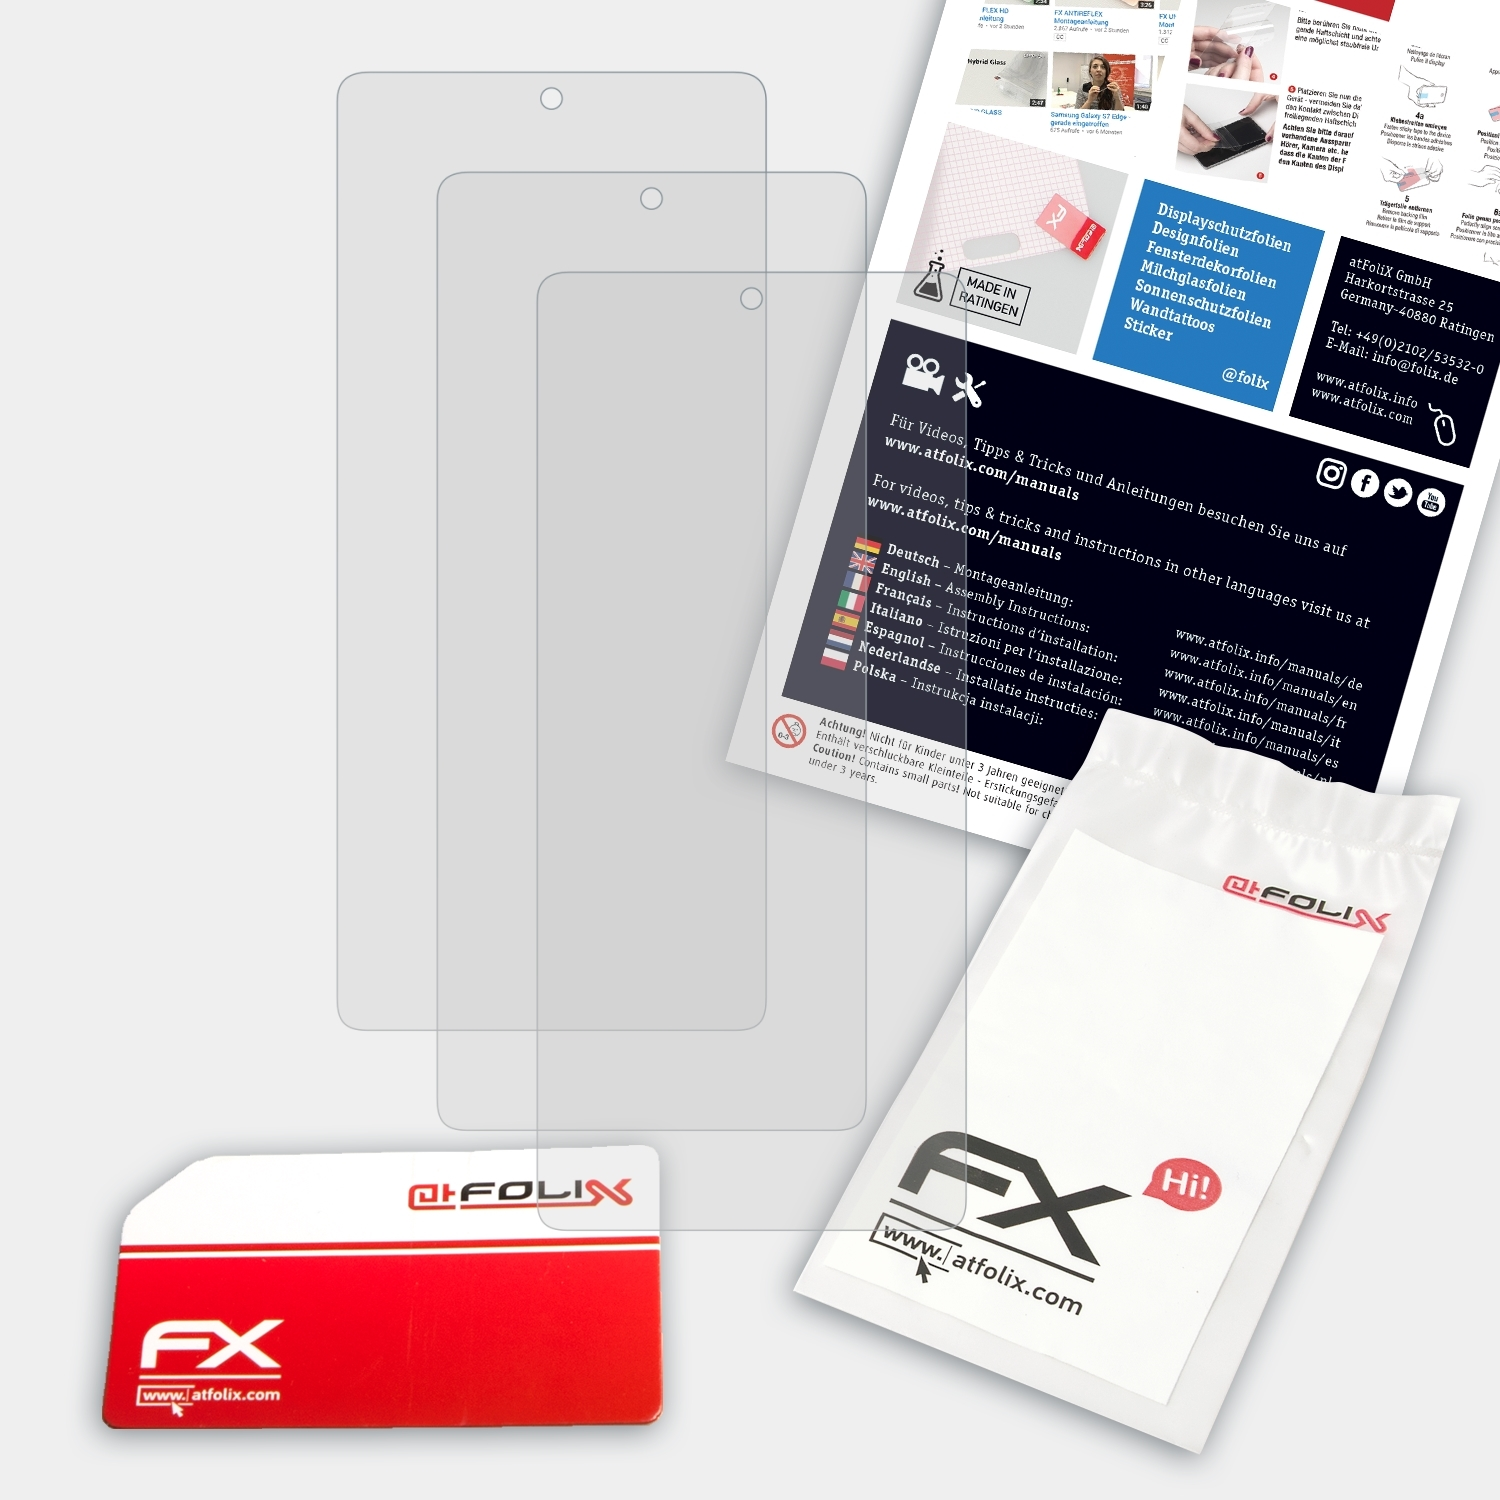 ATFOLIX 11T Pro) 3x FX-Antireflex Displayschutz(für Xiaomi